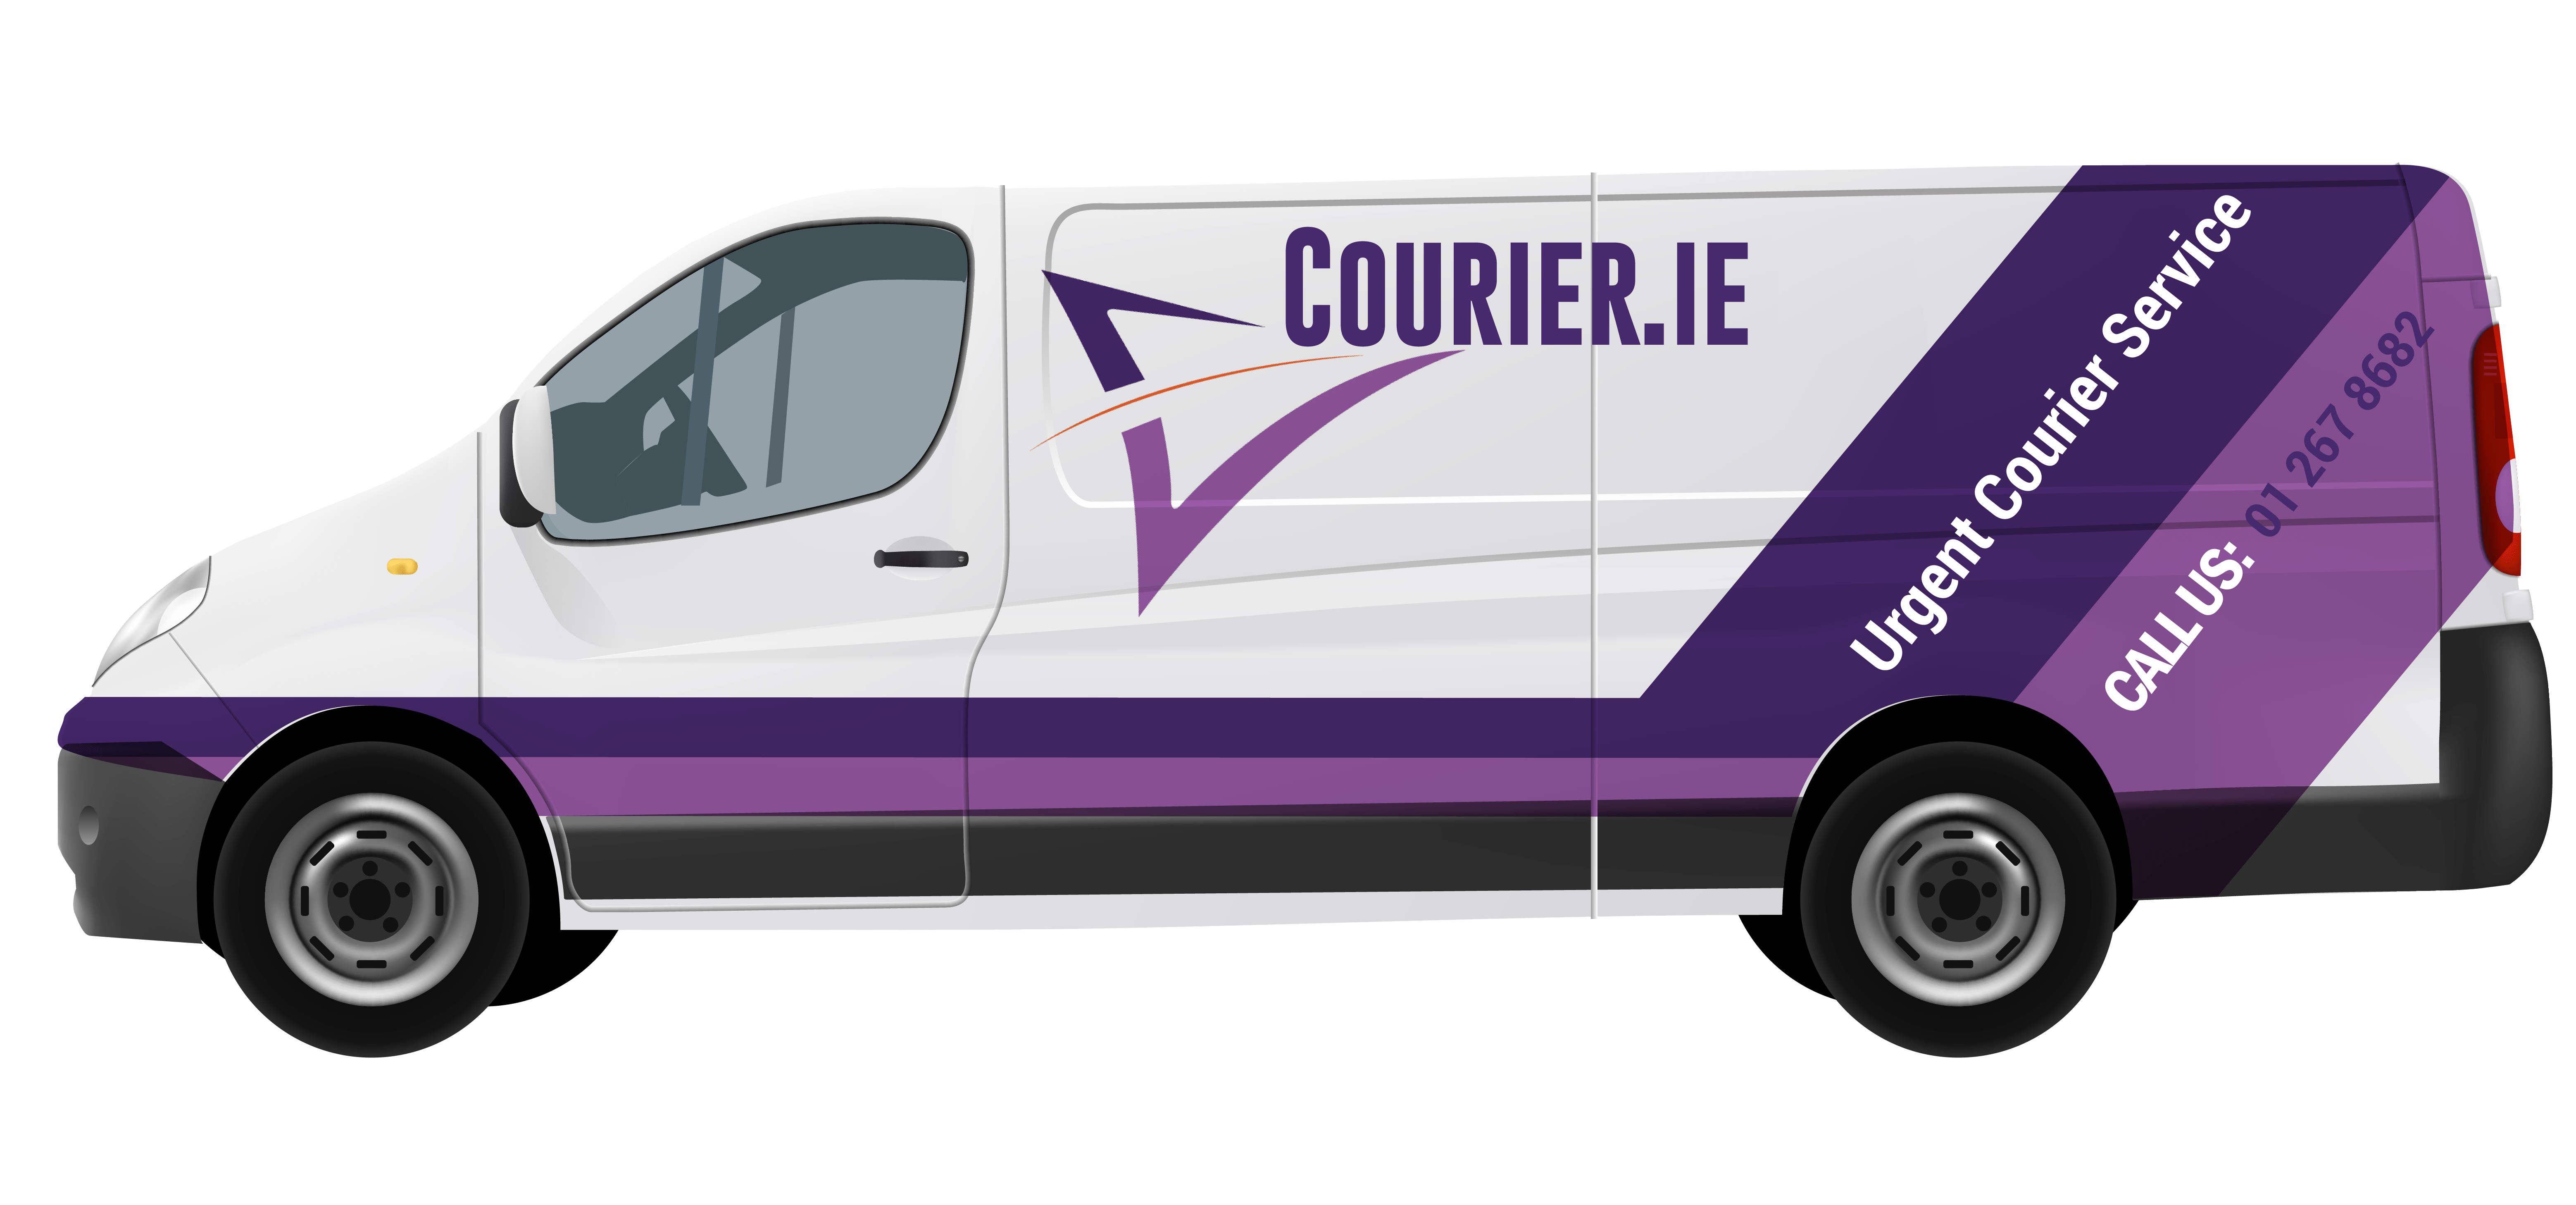 Courier Service Van Parcel Delivery Left